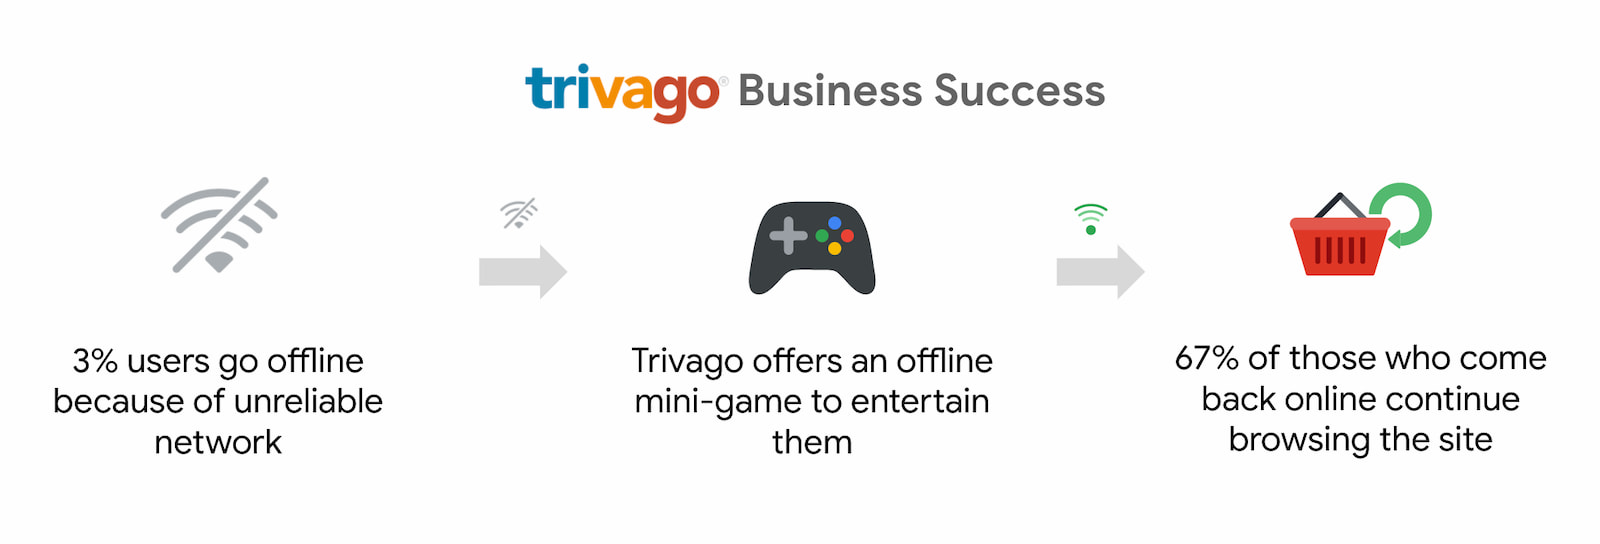 Trivago mengalami peningkatan pengguna yang kembali online dan melanjutkan penjelajahan sebesar 67%.